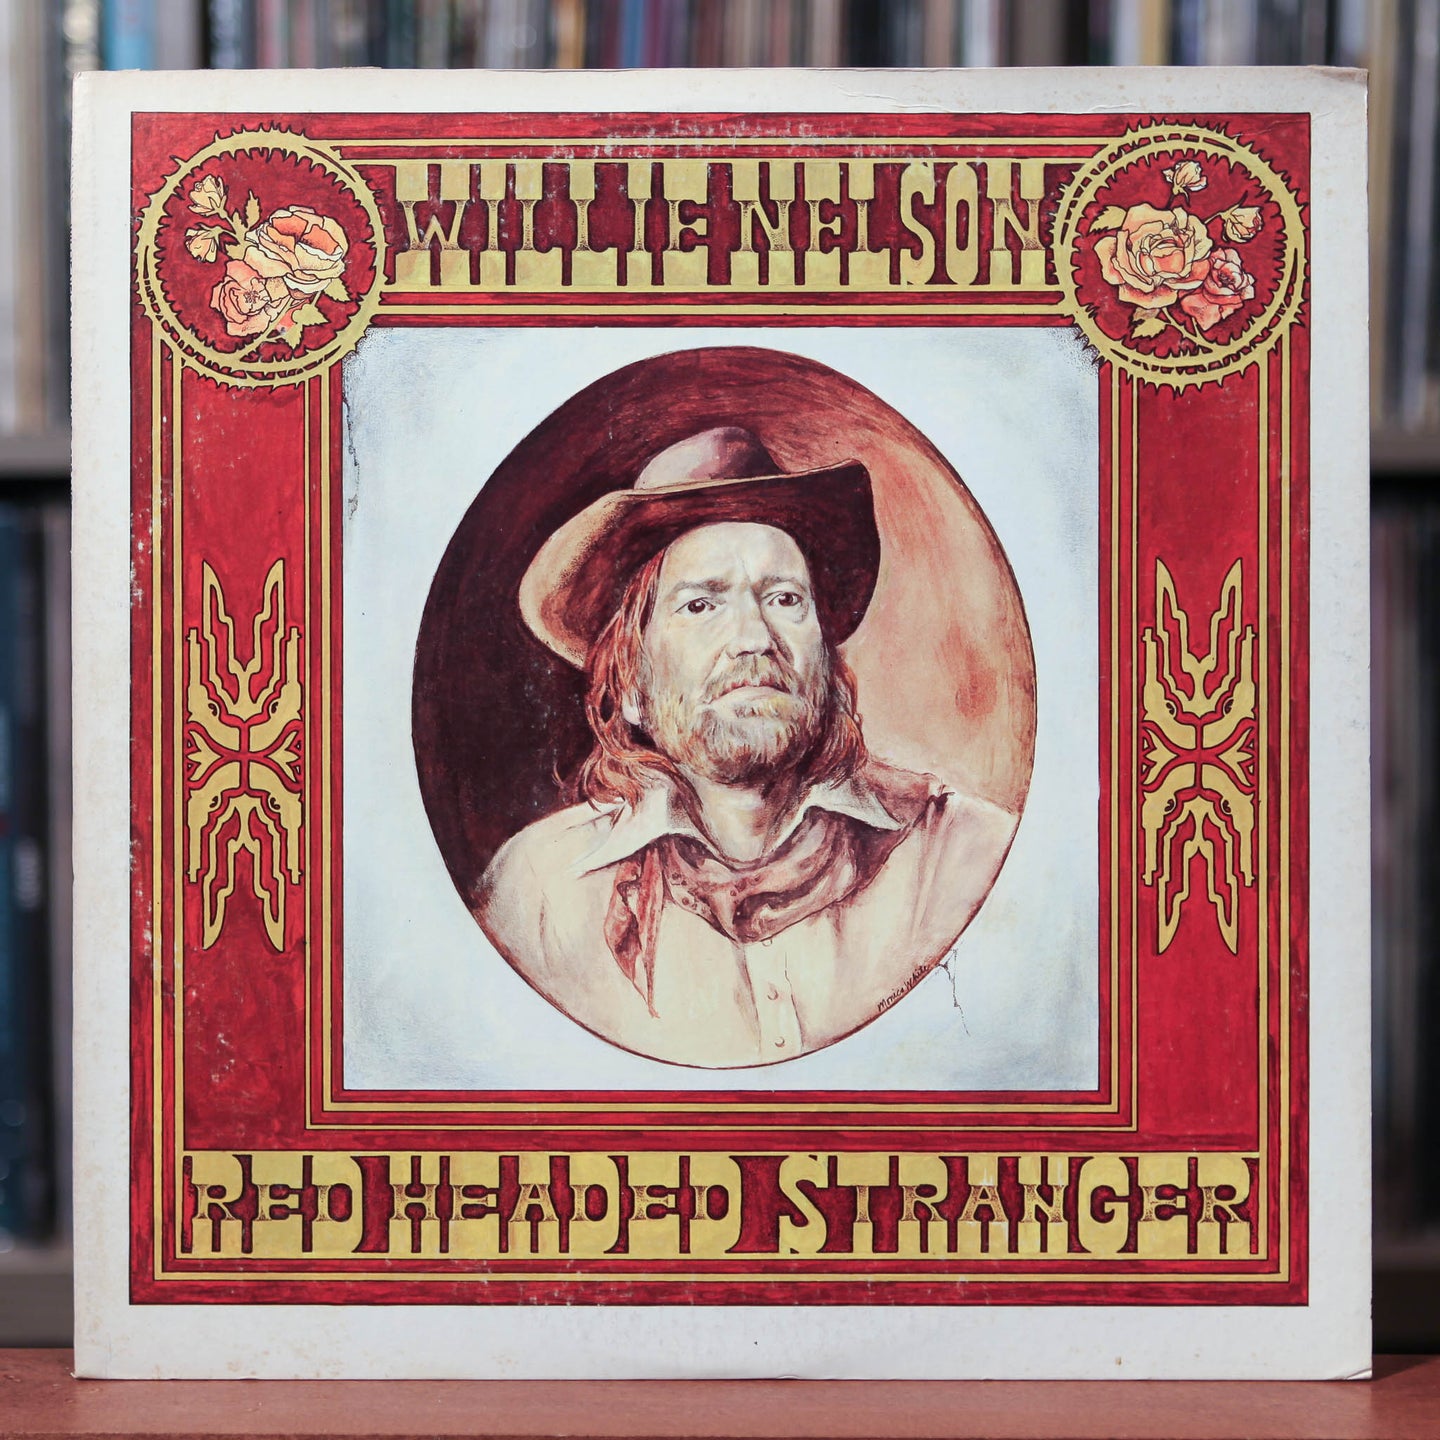 Willie Nelson - Red Headed Stranger - 1975 Columbia, VG+/VG+